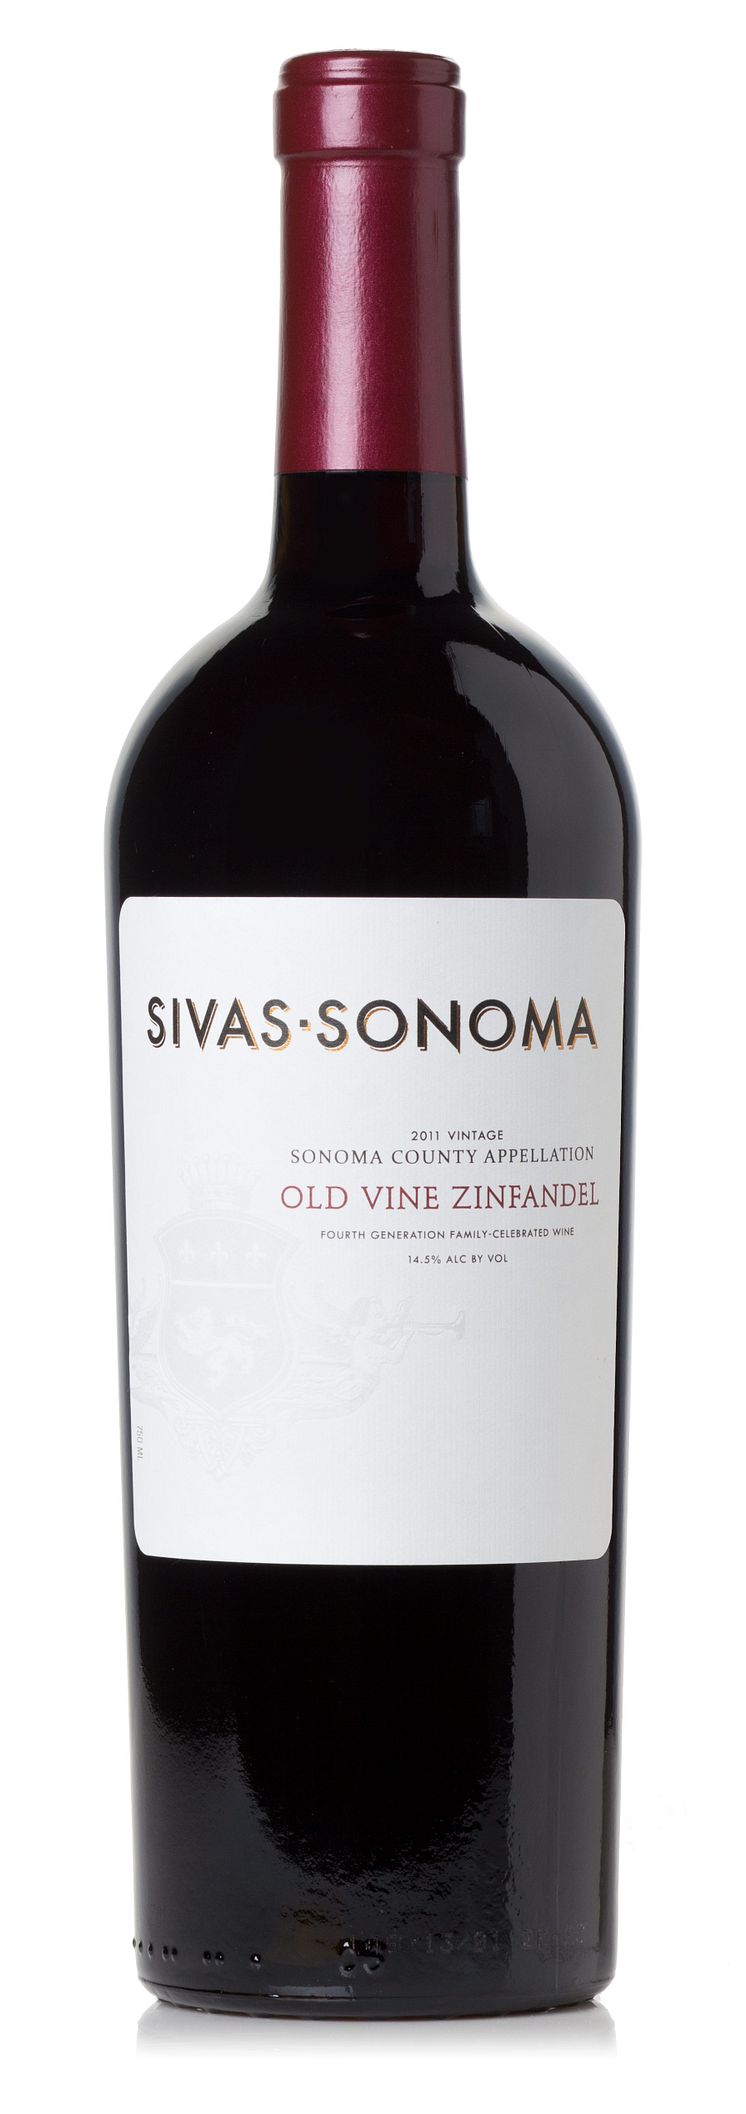 Sivas-Sonoma Old Vine Zinfandel från Kalifornien.